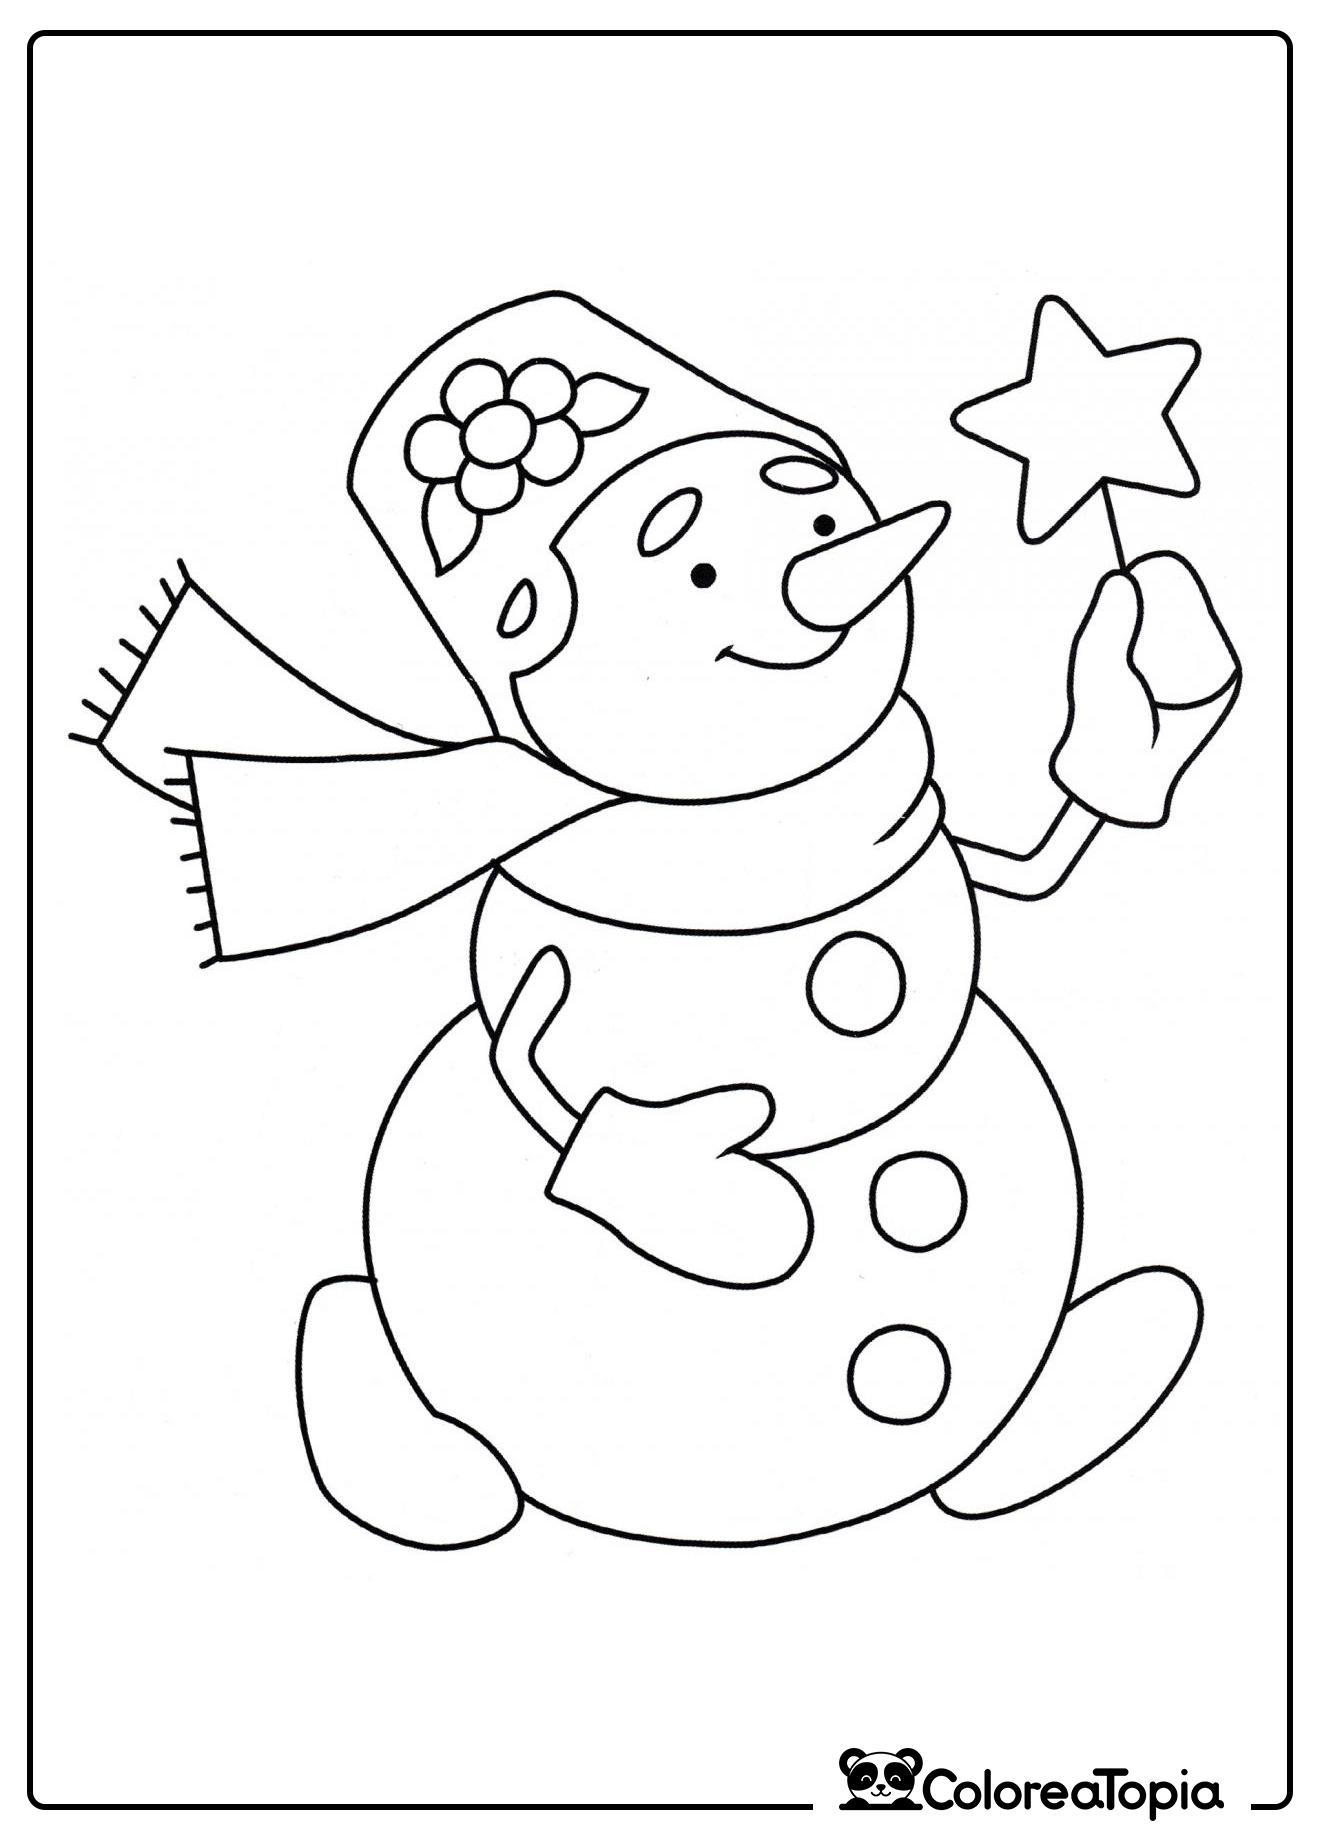 Bonito muñeco de nieve - dibujo para colorear